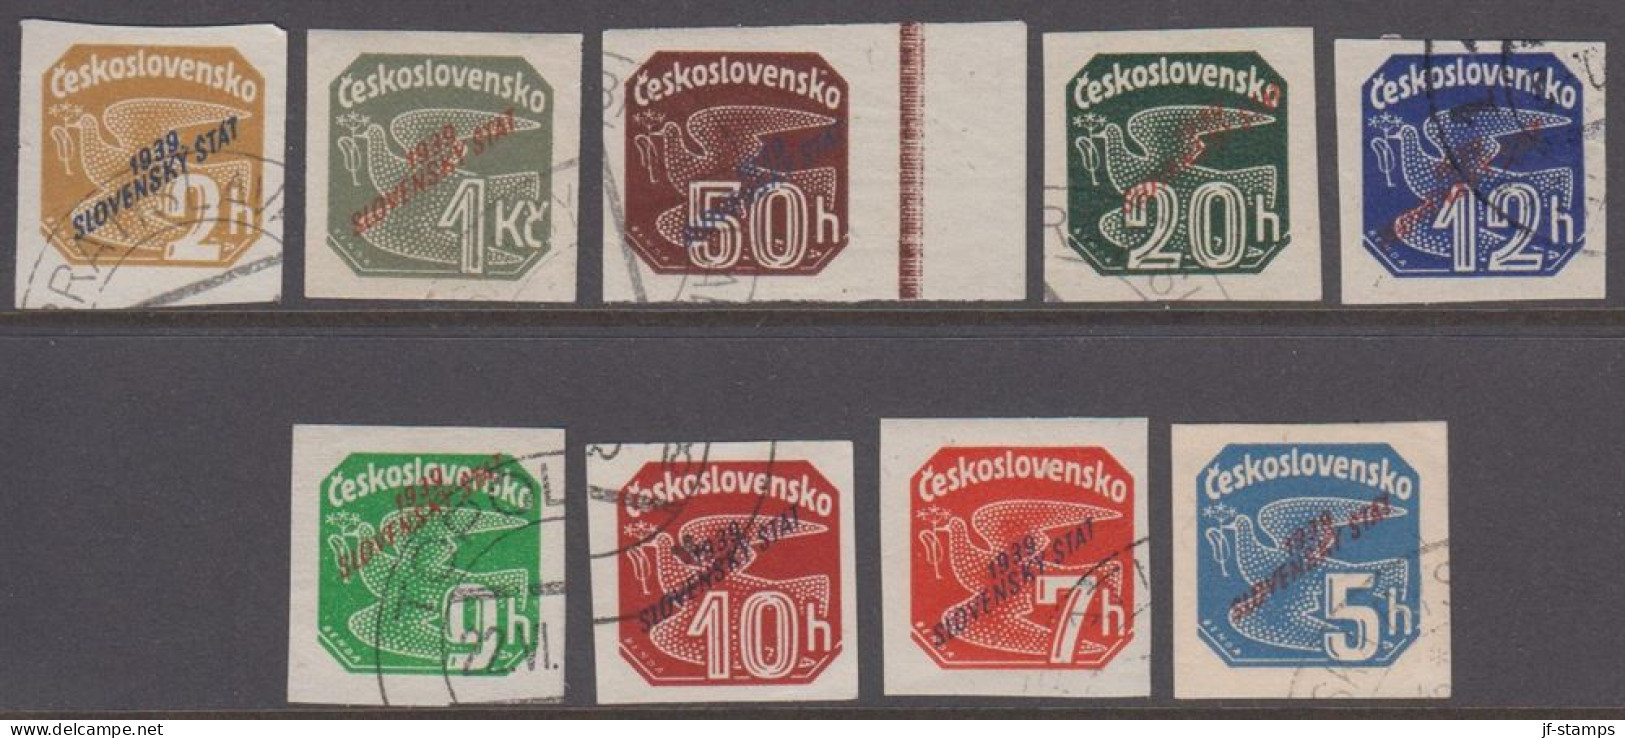 1939. SLOVENSKO 1939 / Slovenský štát On Newspaper Stamps. Complete Set Of 9 Stamps.  (Michel 26-34) - JF418434 - Gebruikt